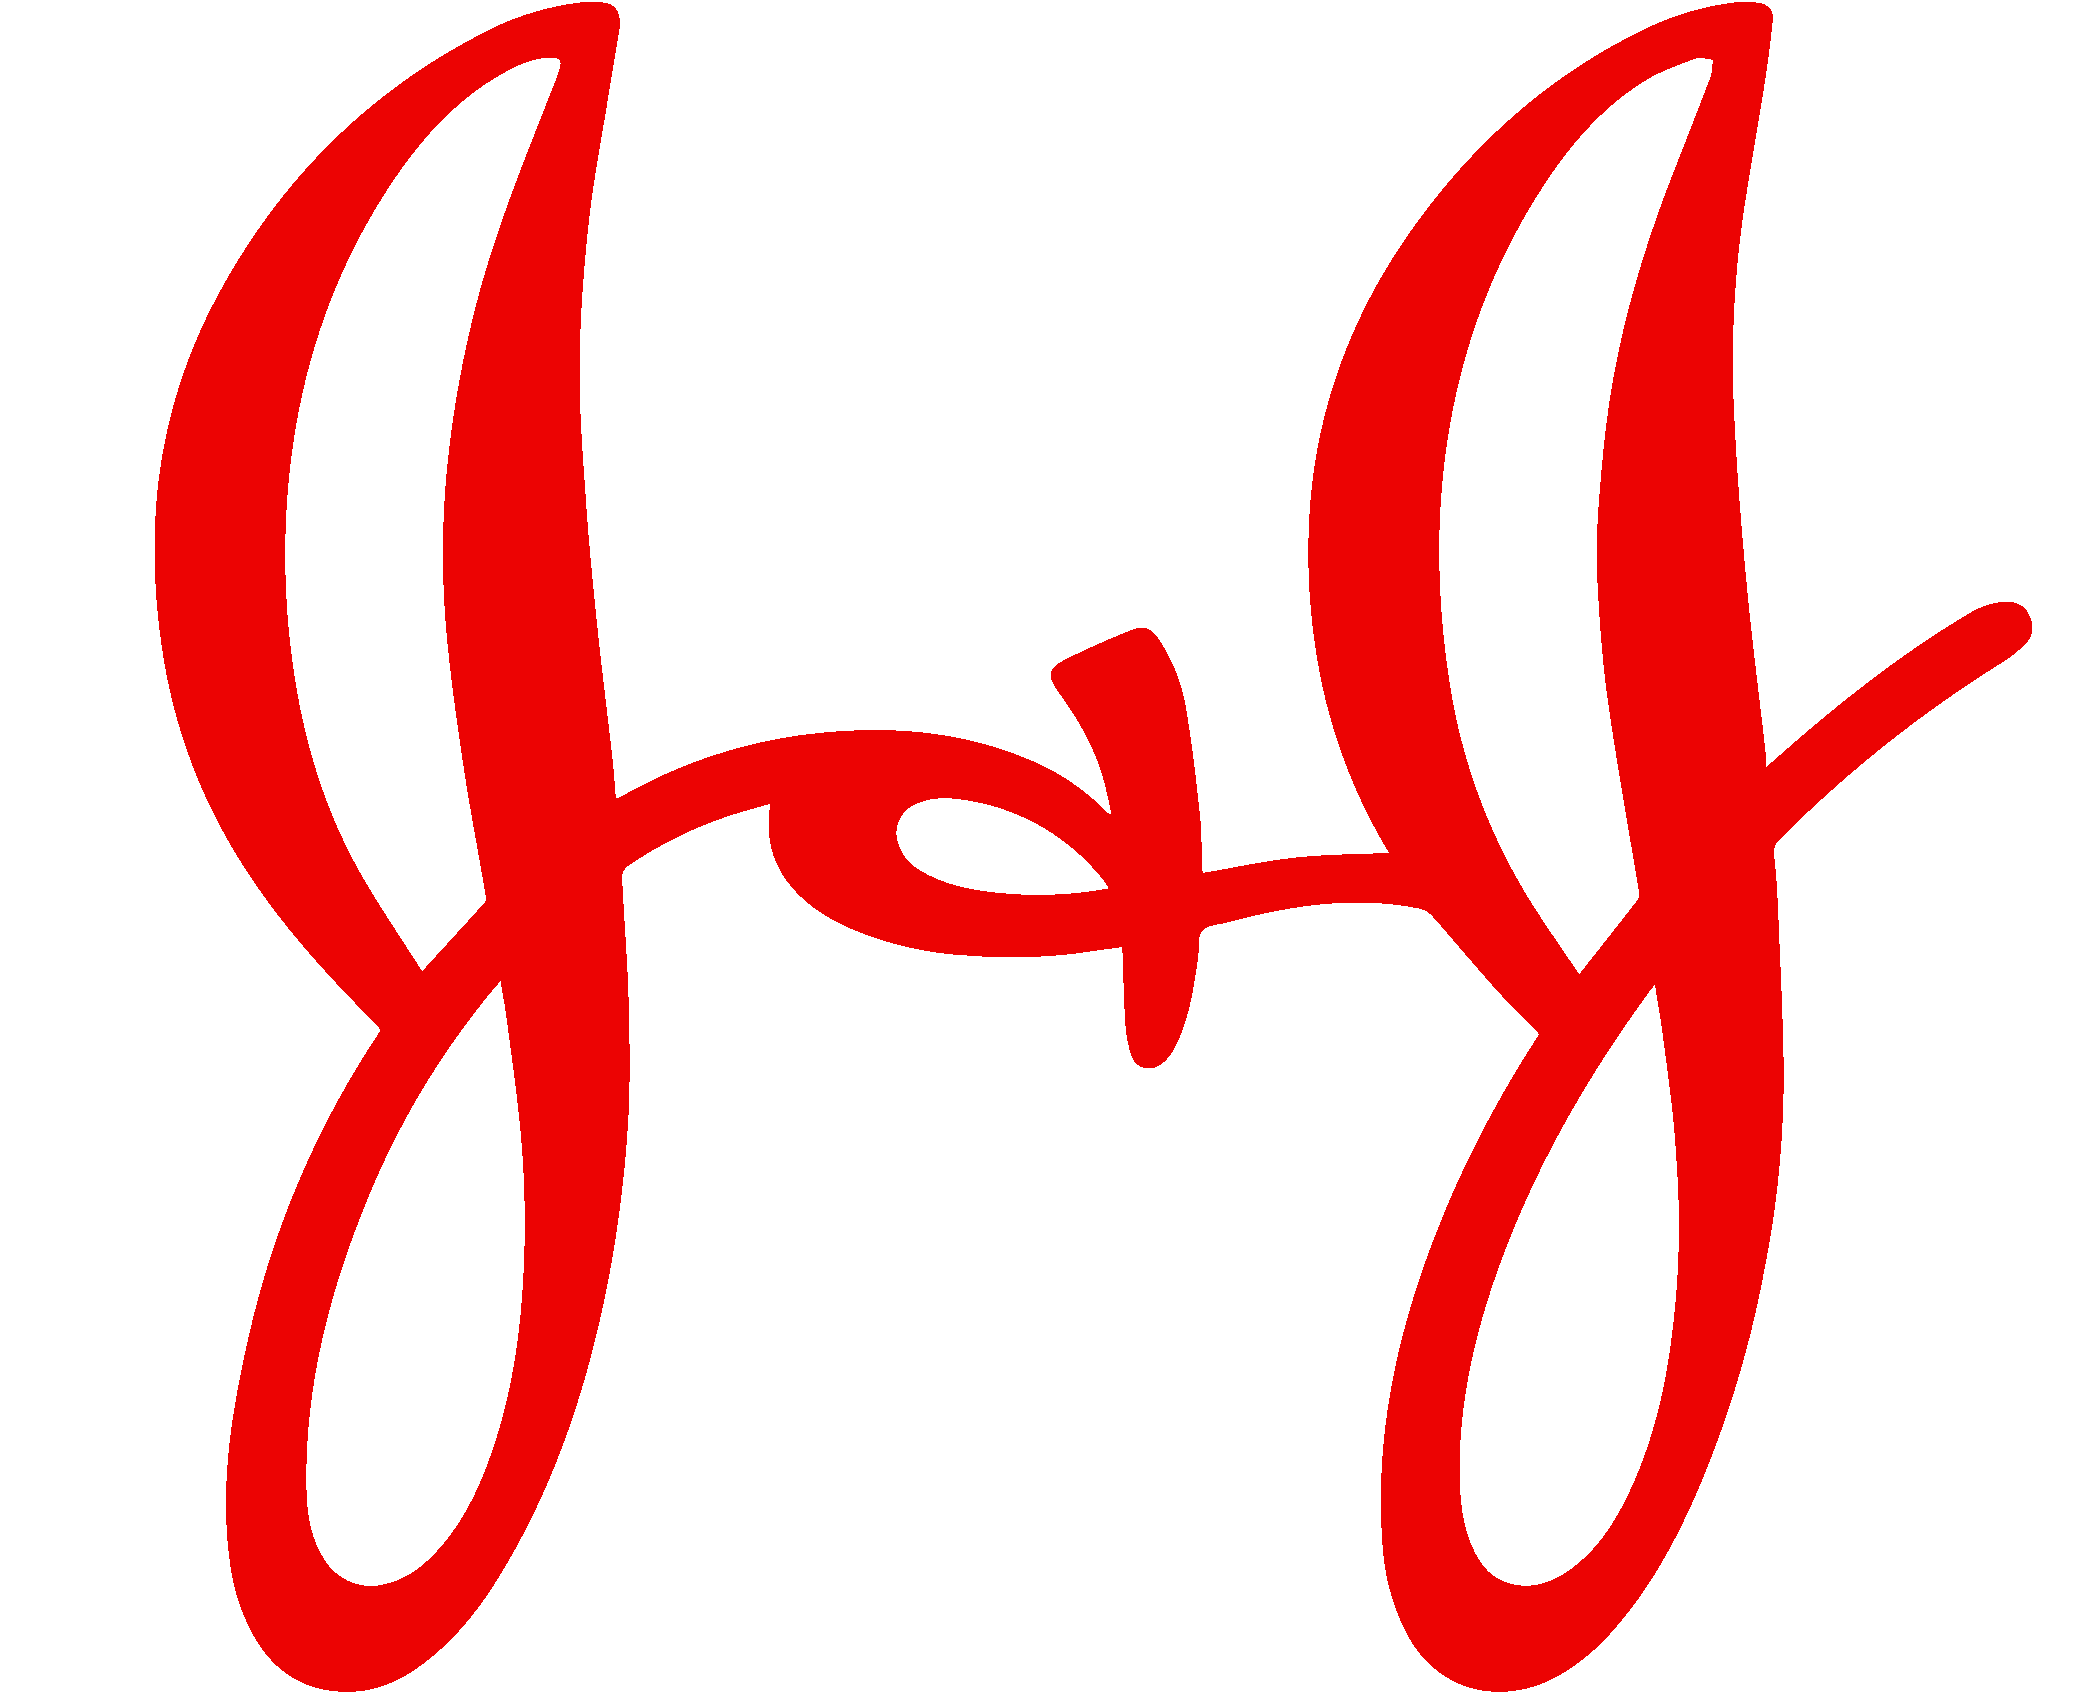 jnj-logo.png